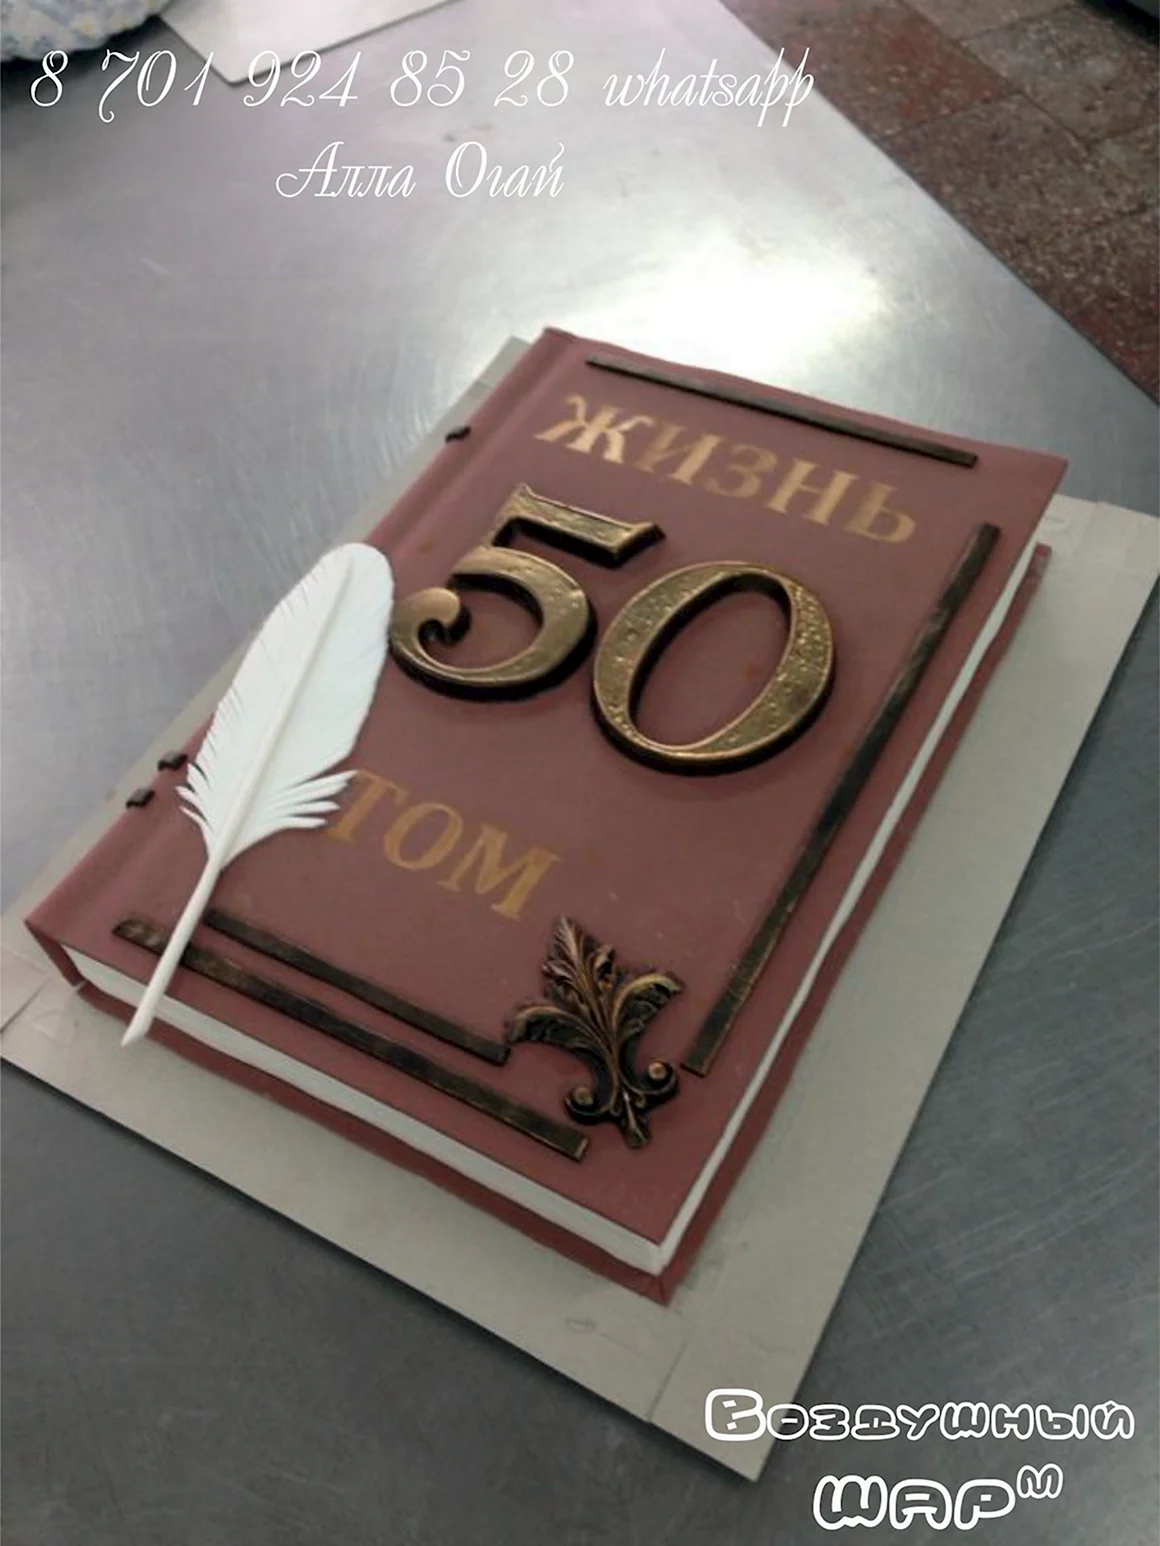 Украшение торта на юбилей 60 лет